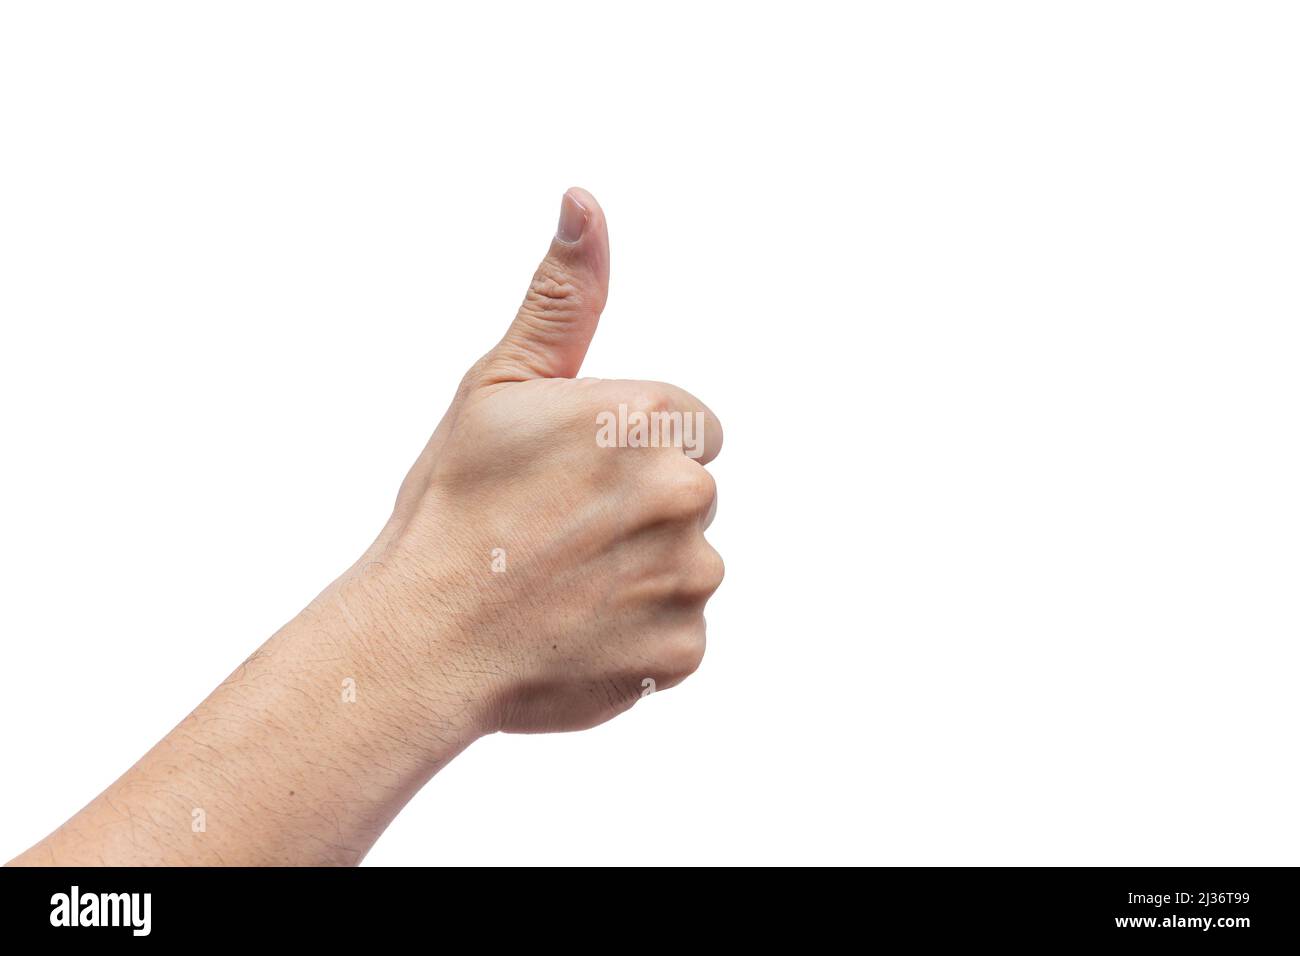 la mano appone i pollici come un buon gesto di passaggio approvato isolato su sfondo bianco. Foto Stock